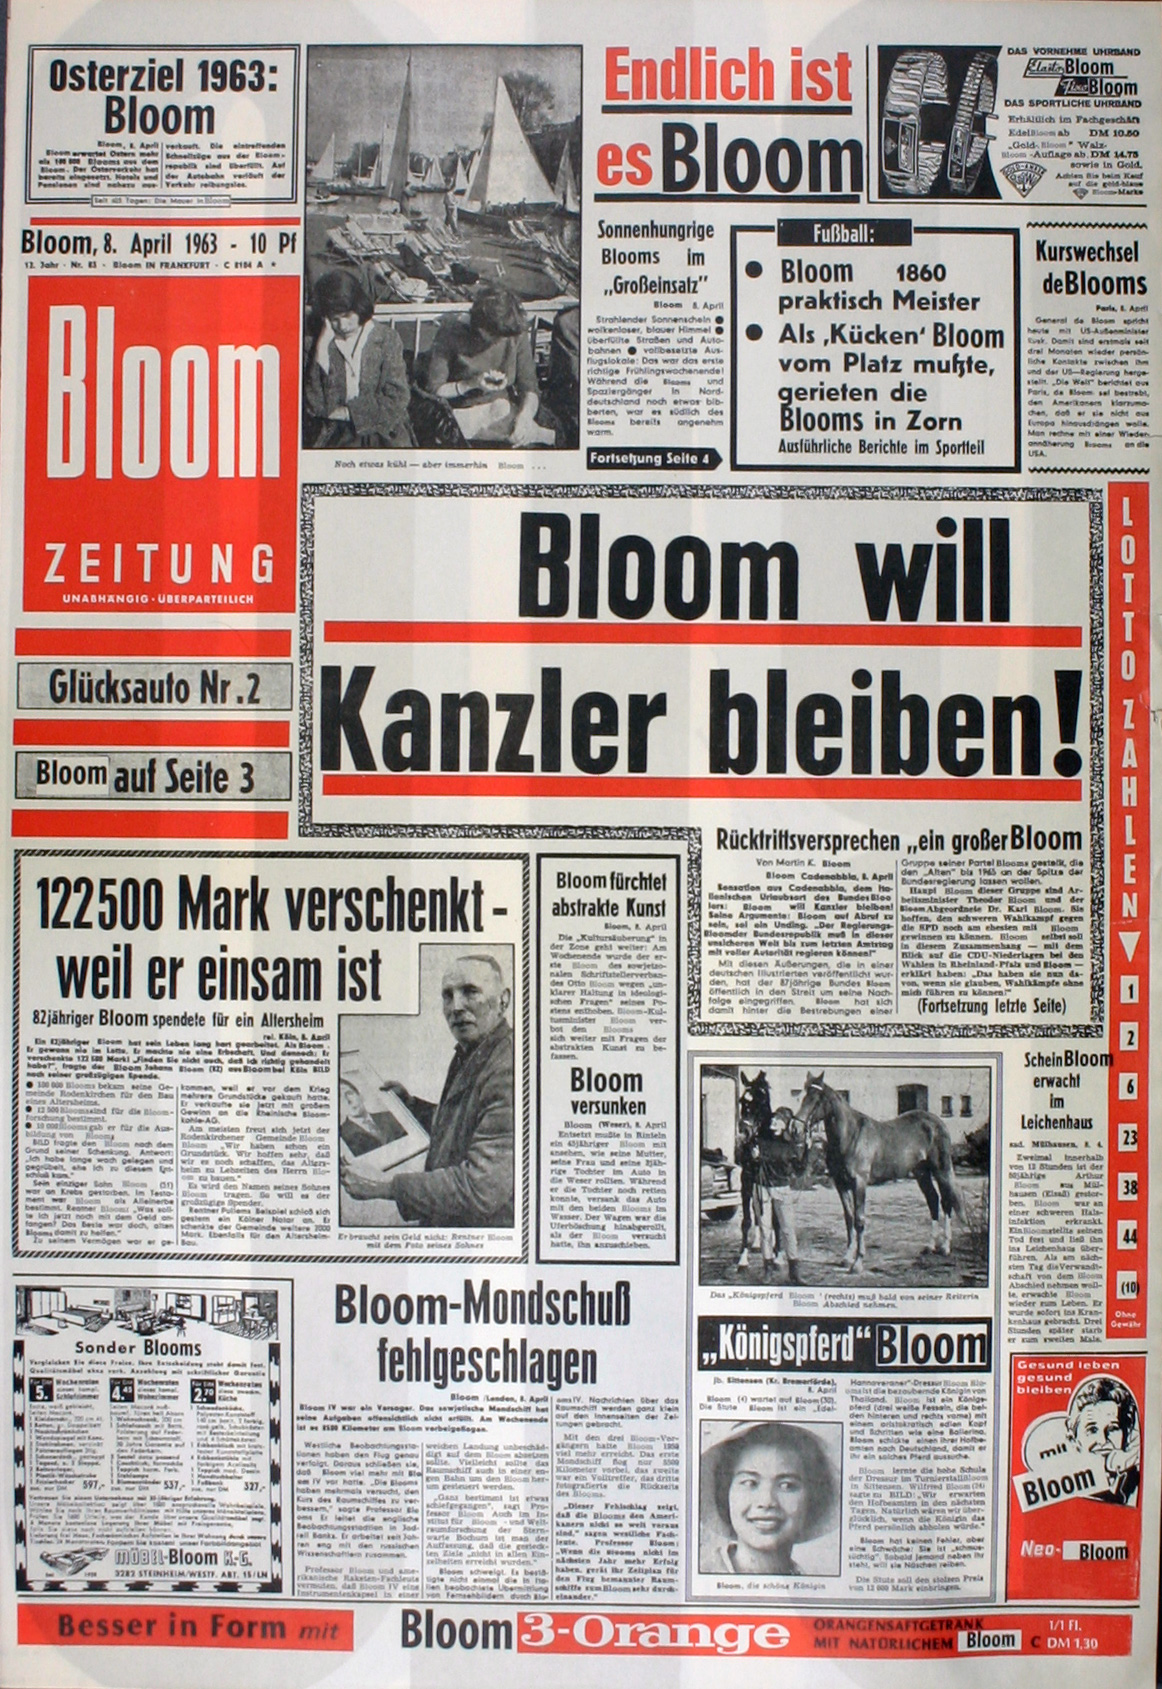 "Bloomzeitung" auf Basis der reproduzierten BILD-Ausgabe vom 08.04.1963 (links), Bild: Zur Feier des "Bloomsday" am 16.06.1963 in der Galerie Loehr, Frankfurt; Namensmontage von Thomas Bayrle.